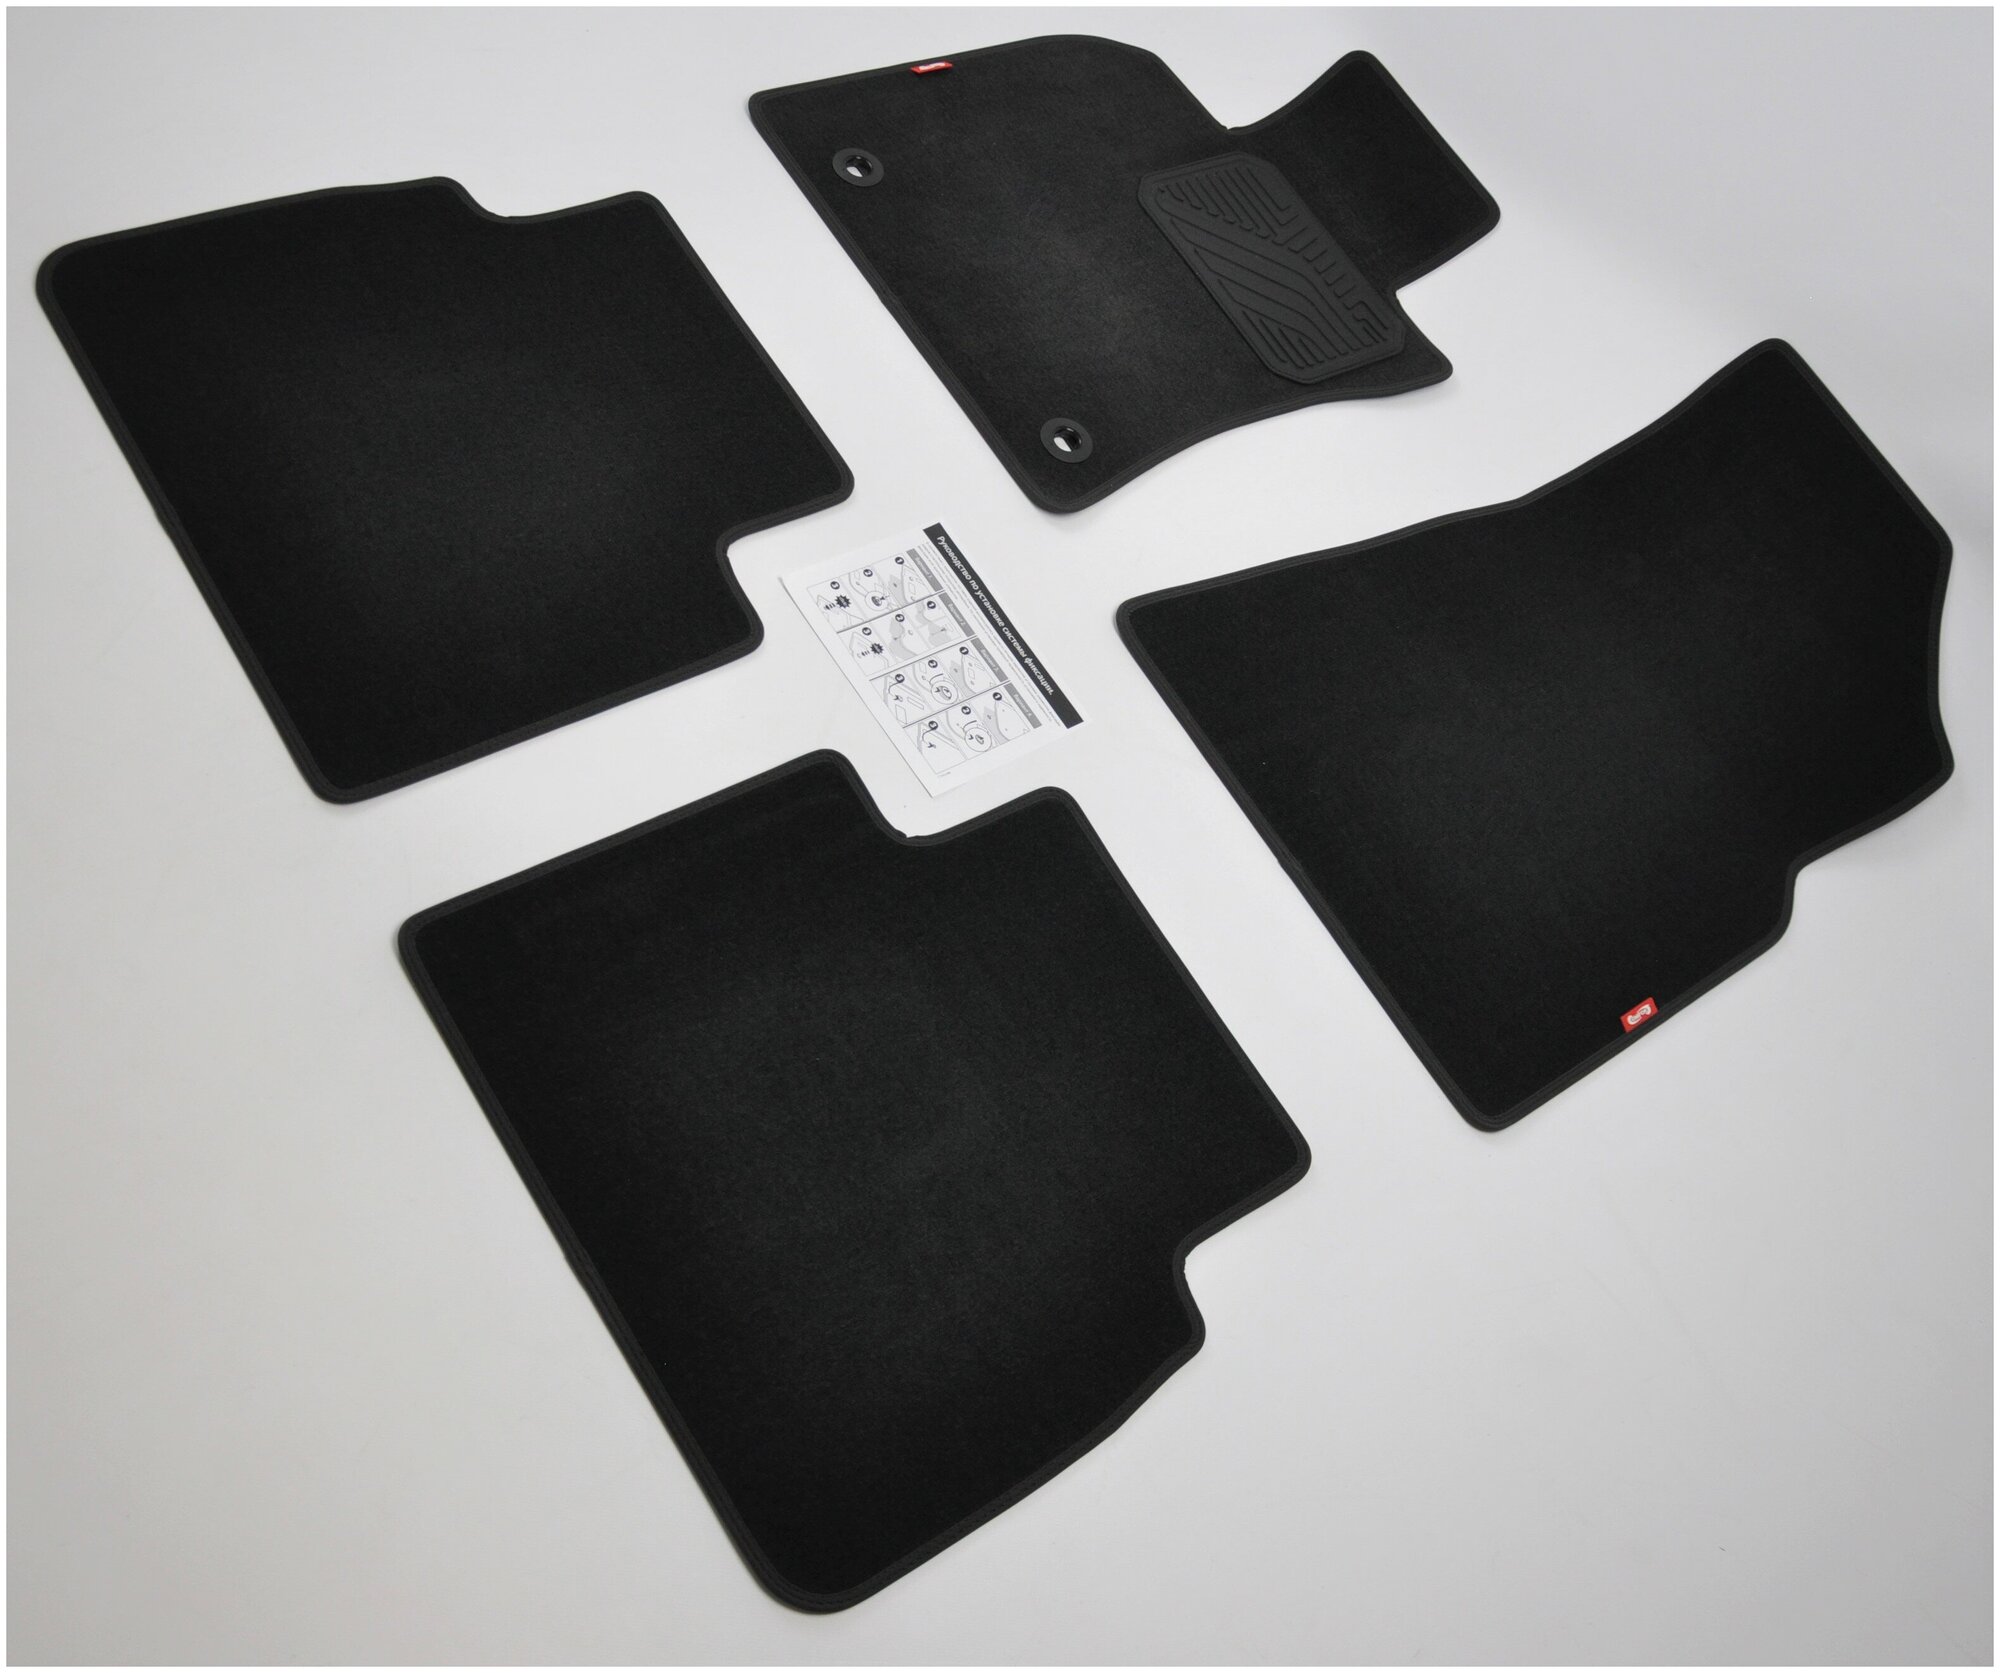 Коврики в салон текстиль комплект для Toyota Camry седан VIII XV70 2017- на резиновой основе с крепежом.